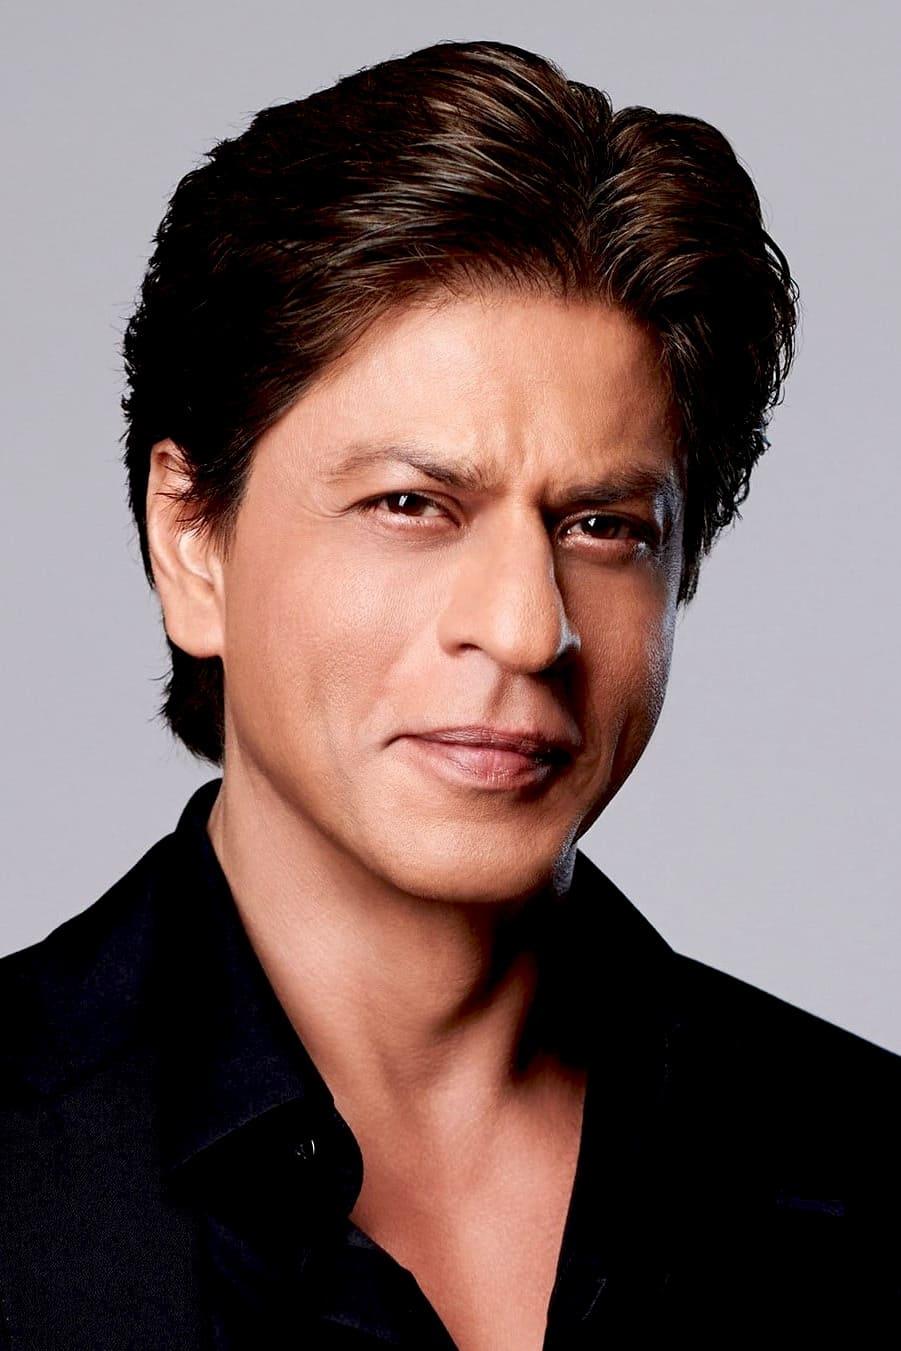 Shah Rukh Khan | Vikram Rathore / Azad Rathore